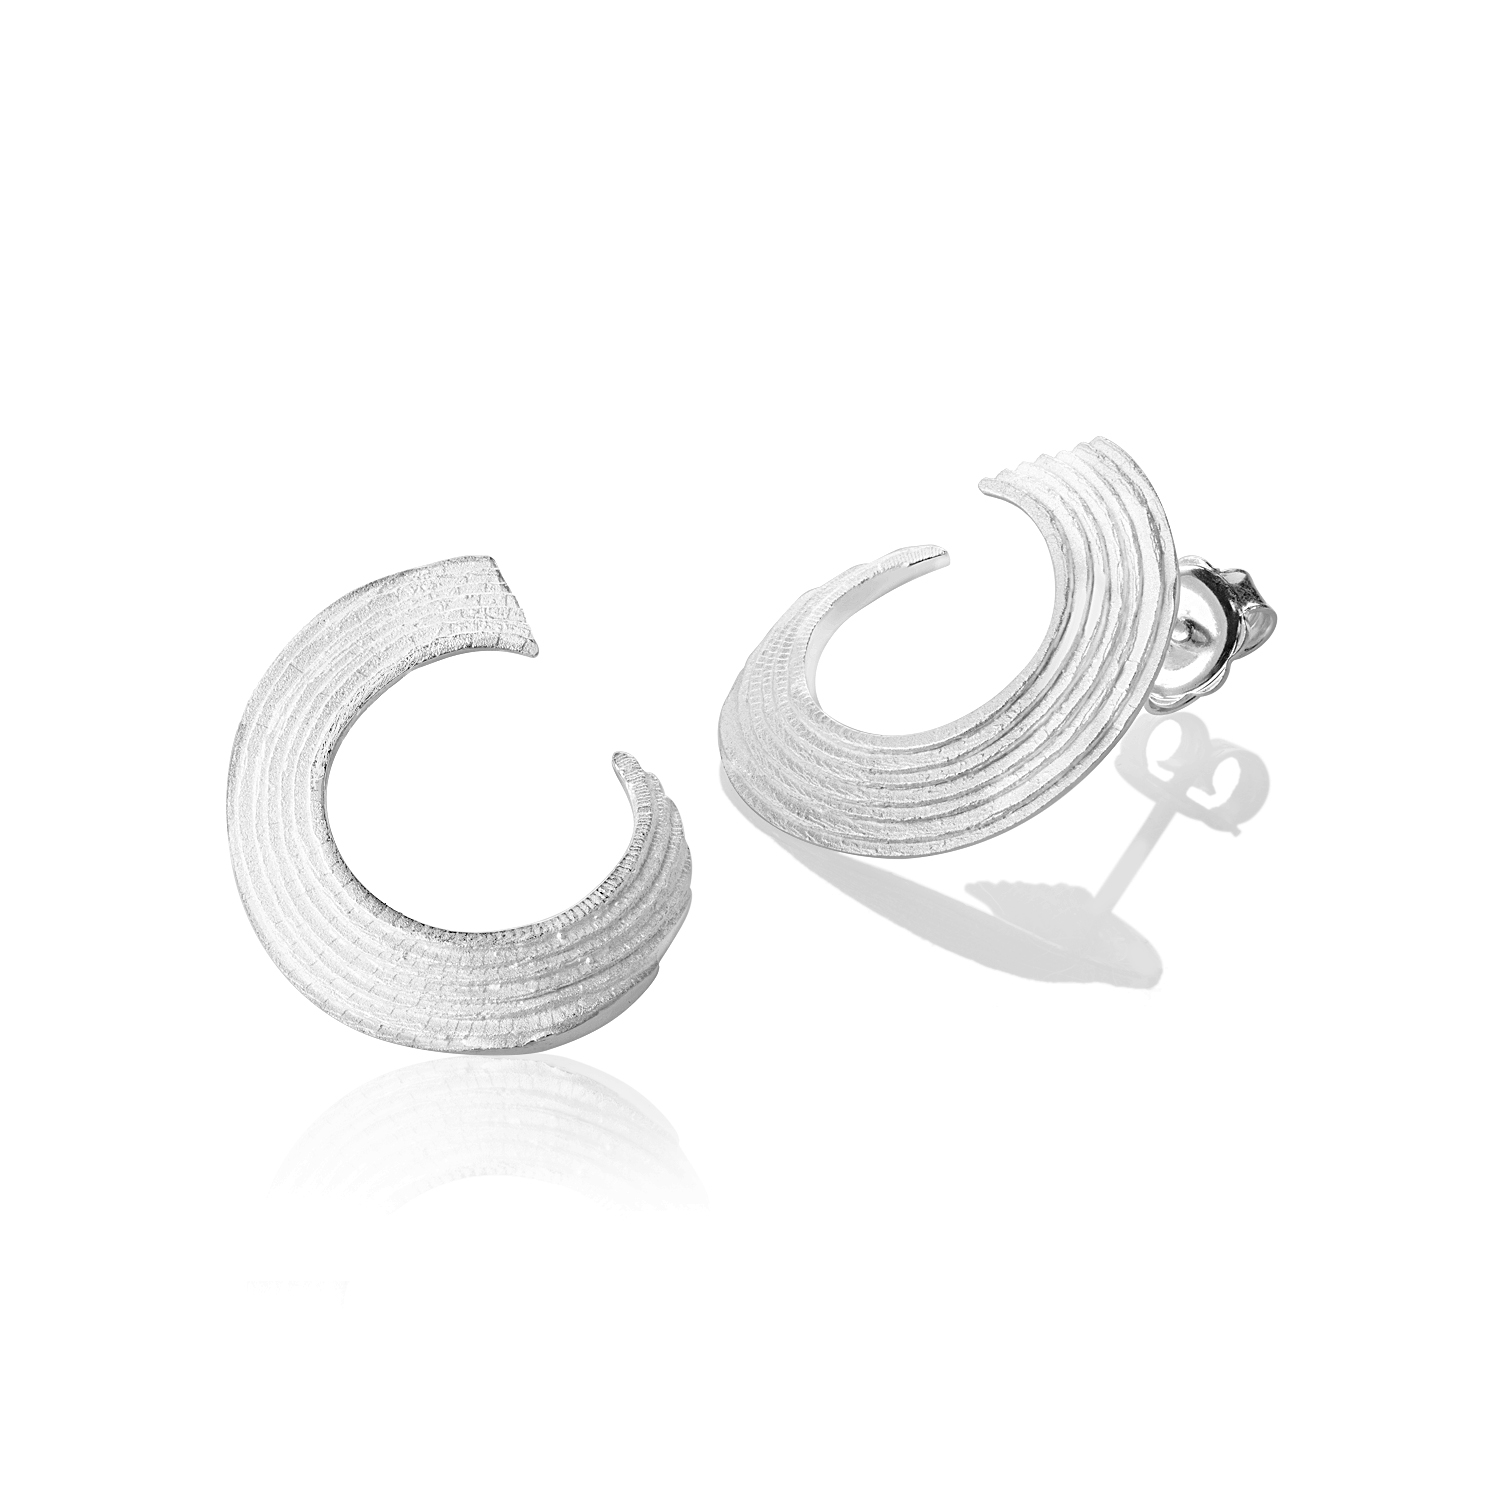 Graons silver earrings